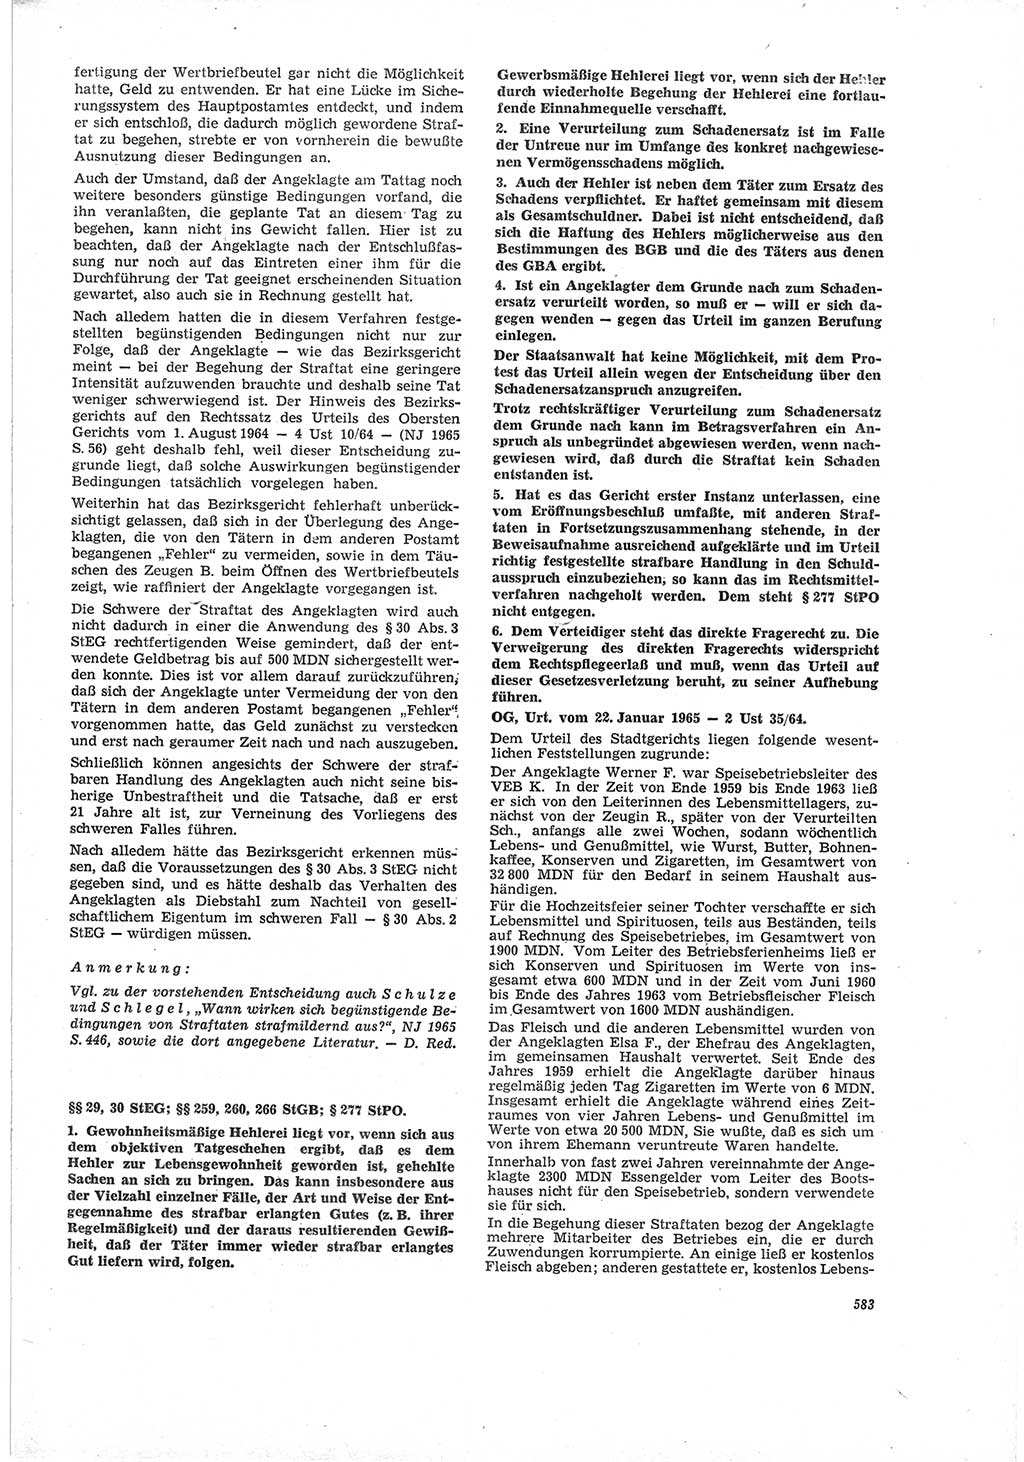 Neue Justiz (NJ), Zeitschrift für Recht und Rechtswissenschaft [Deutsche Demokratische Republik (DDR)], 19. Jahrgang 1965, Seite 583 (NJ DDR 1965, S. 583)